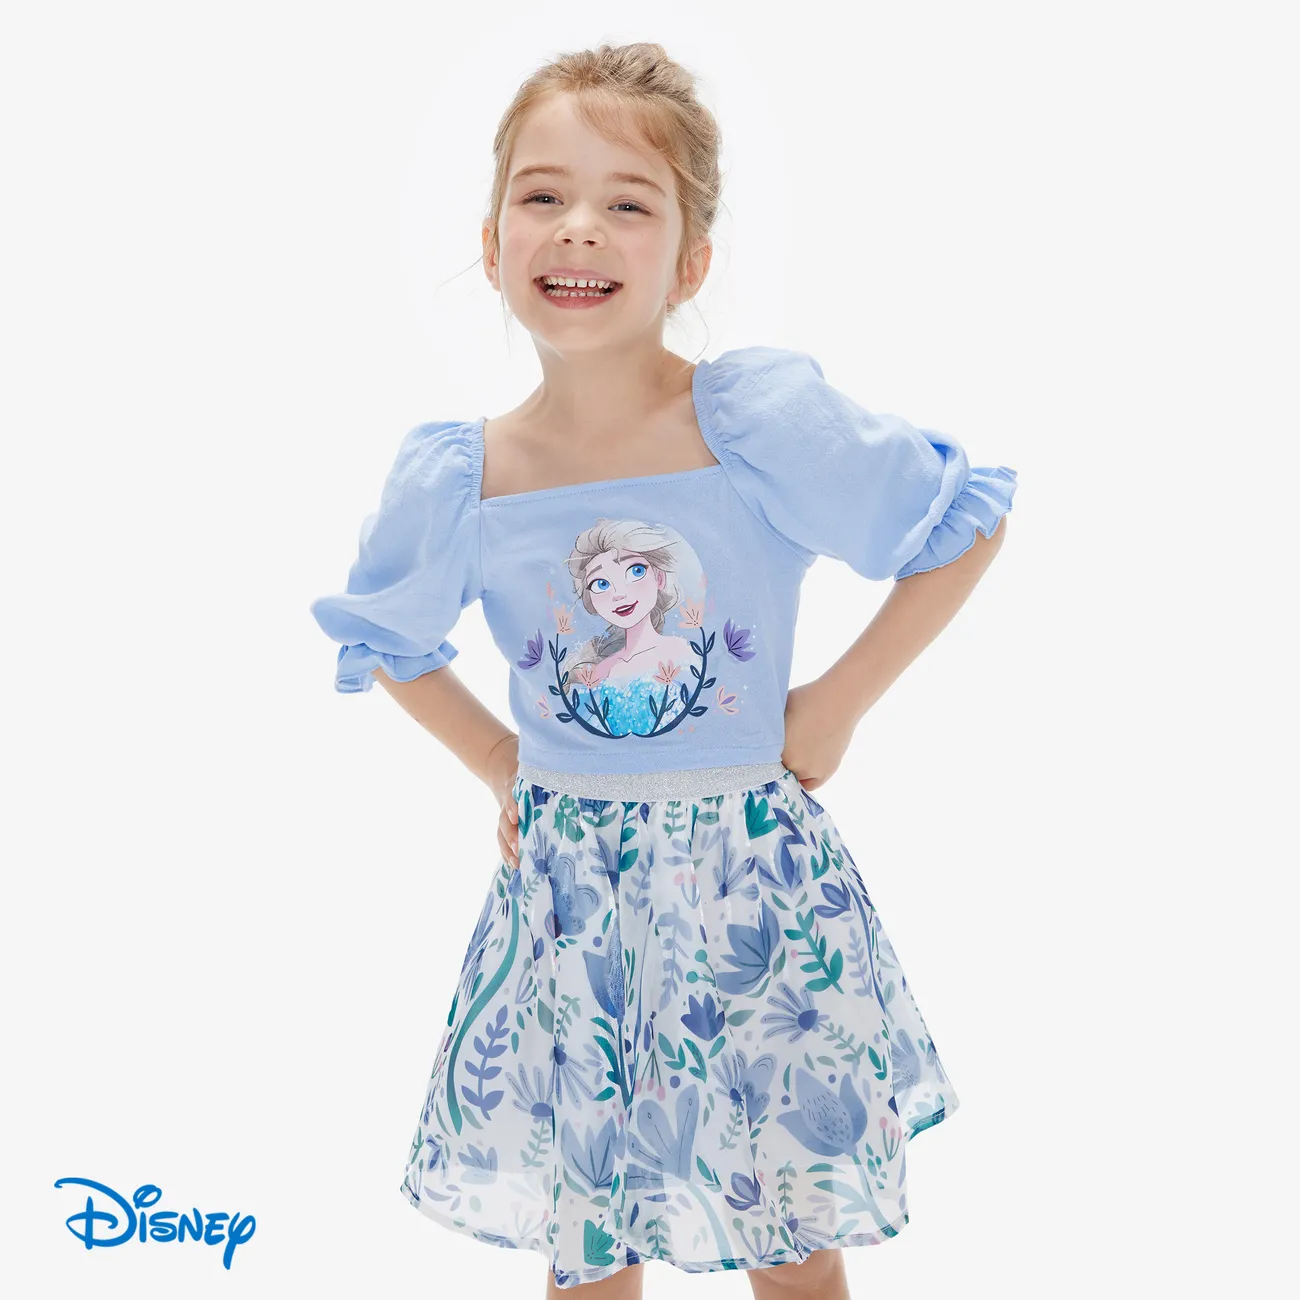 Disney Frozen 2 unidades Criança Menina Colarinho quadrado Bonito Azul big image 1